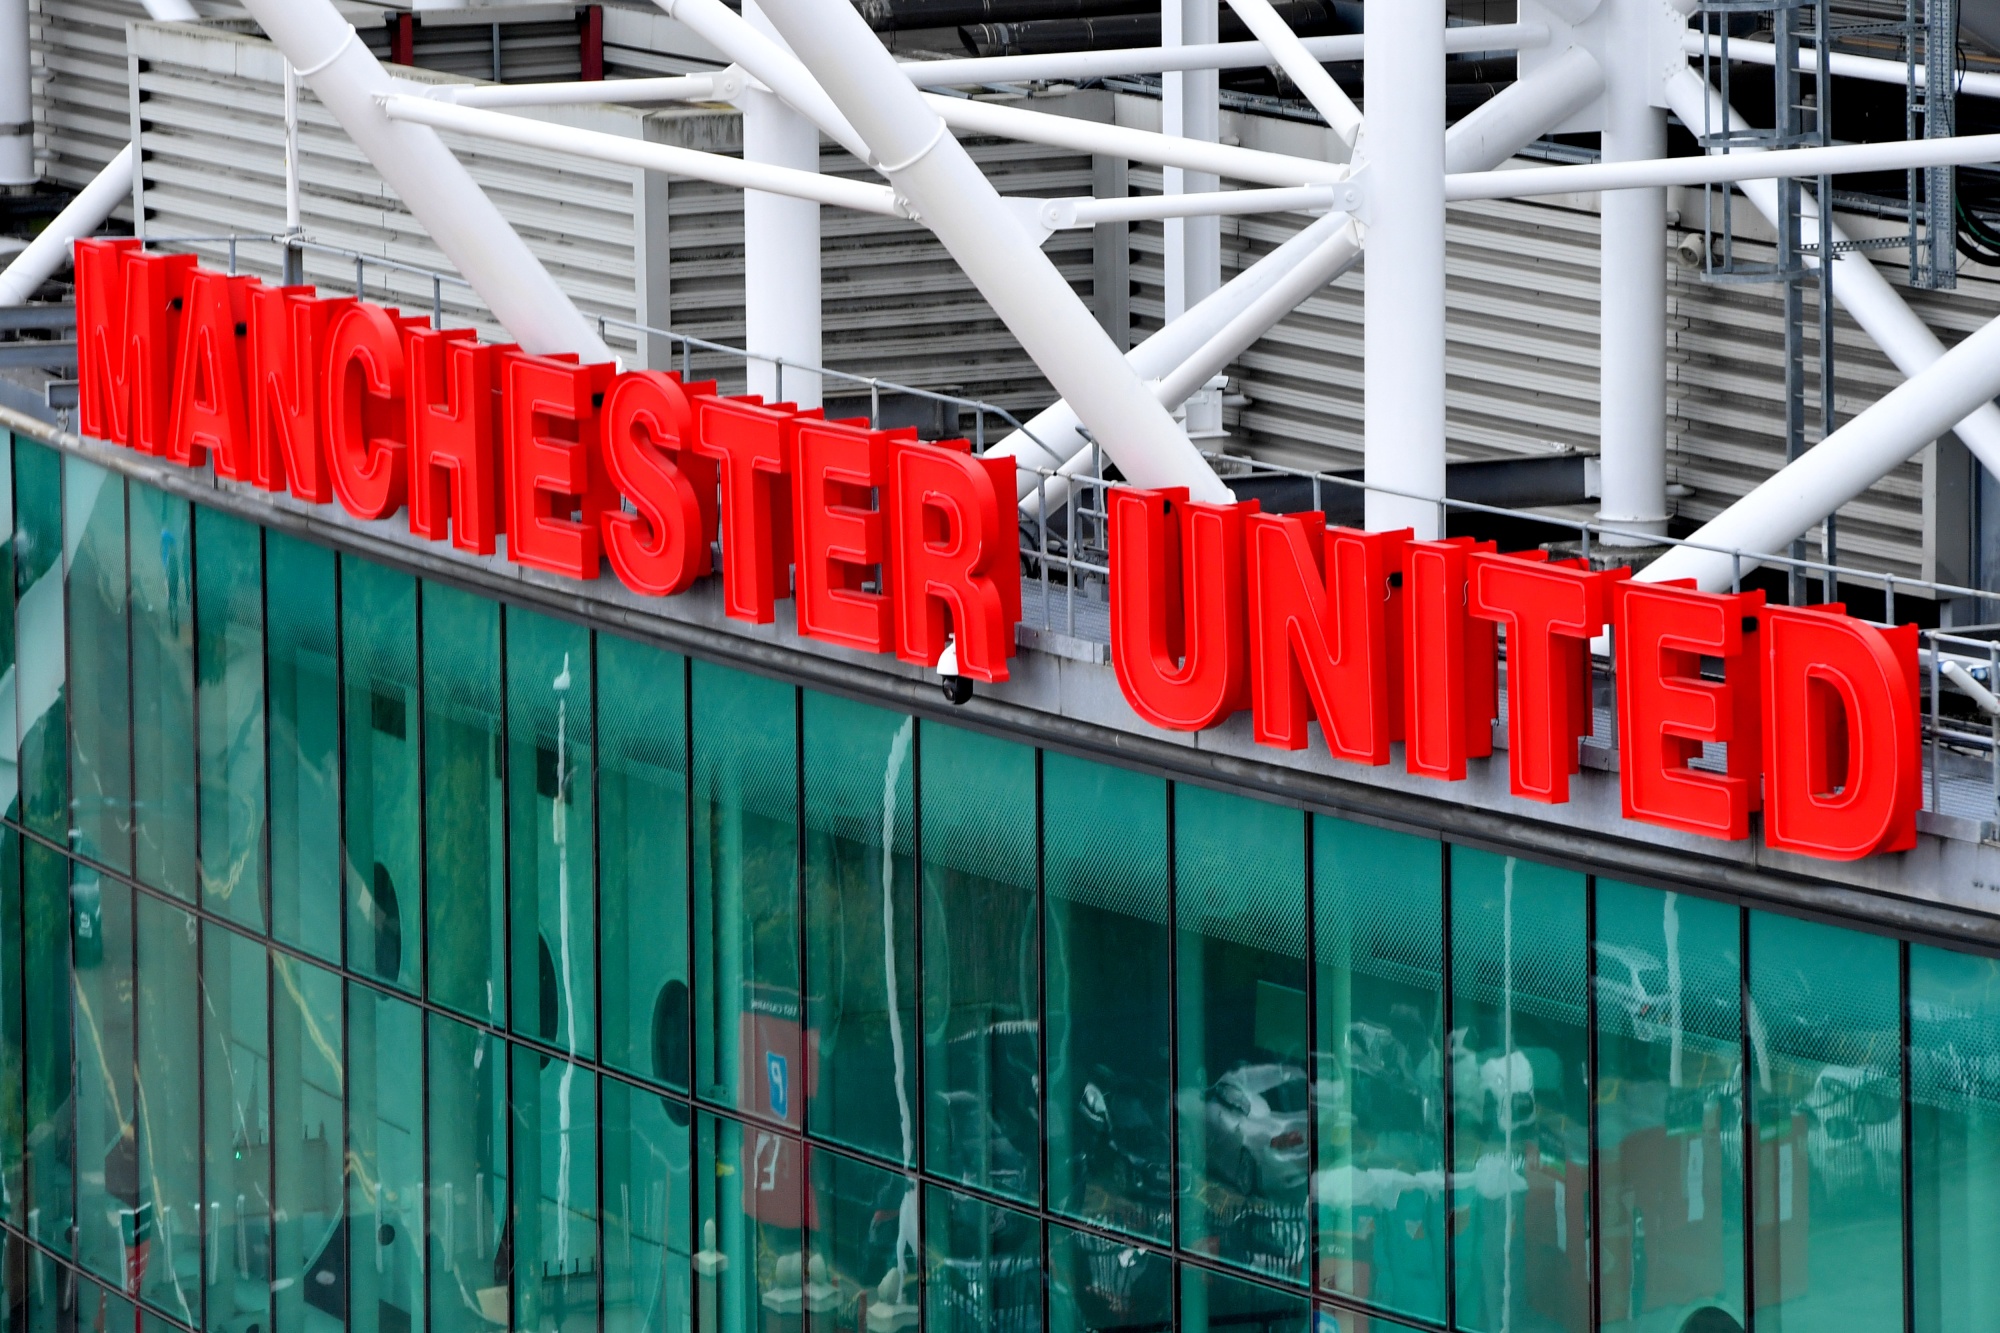 Qatari Investors Withdraw Bid for Manchester United - Bloomberg